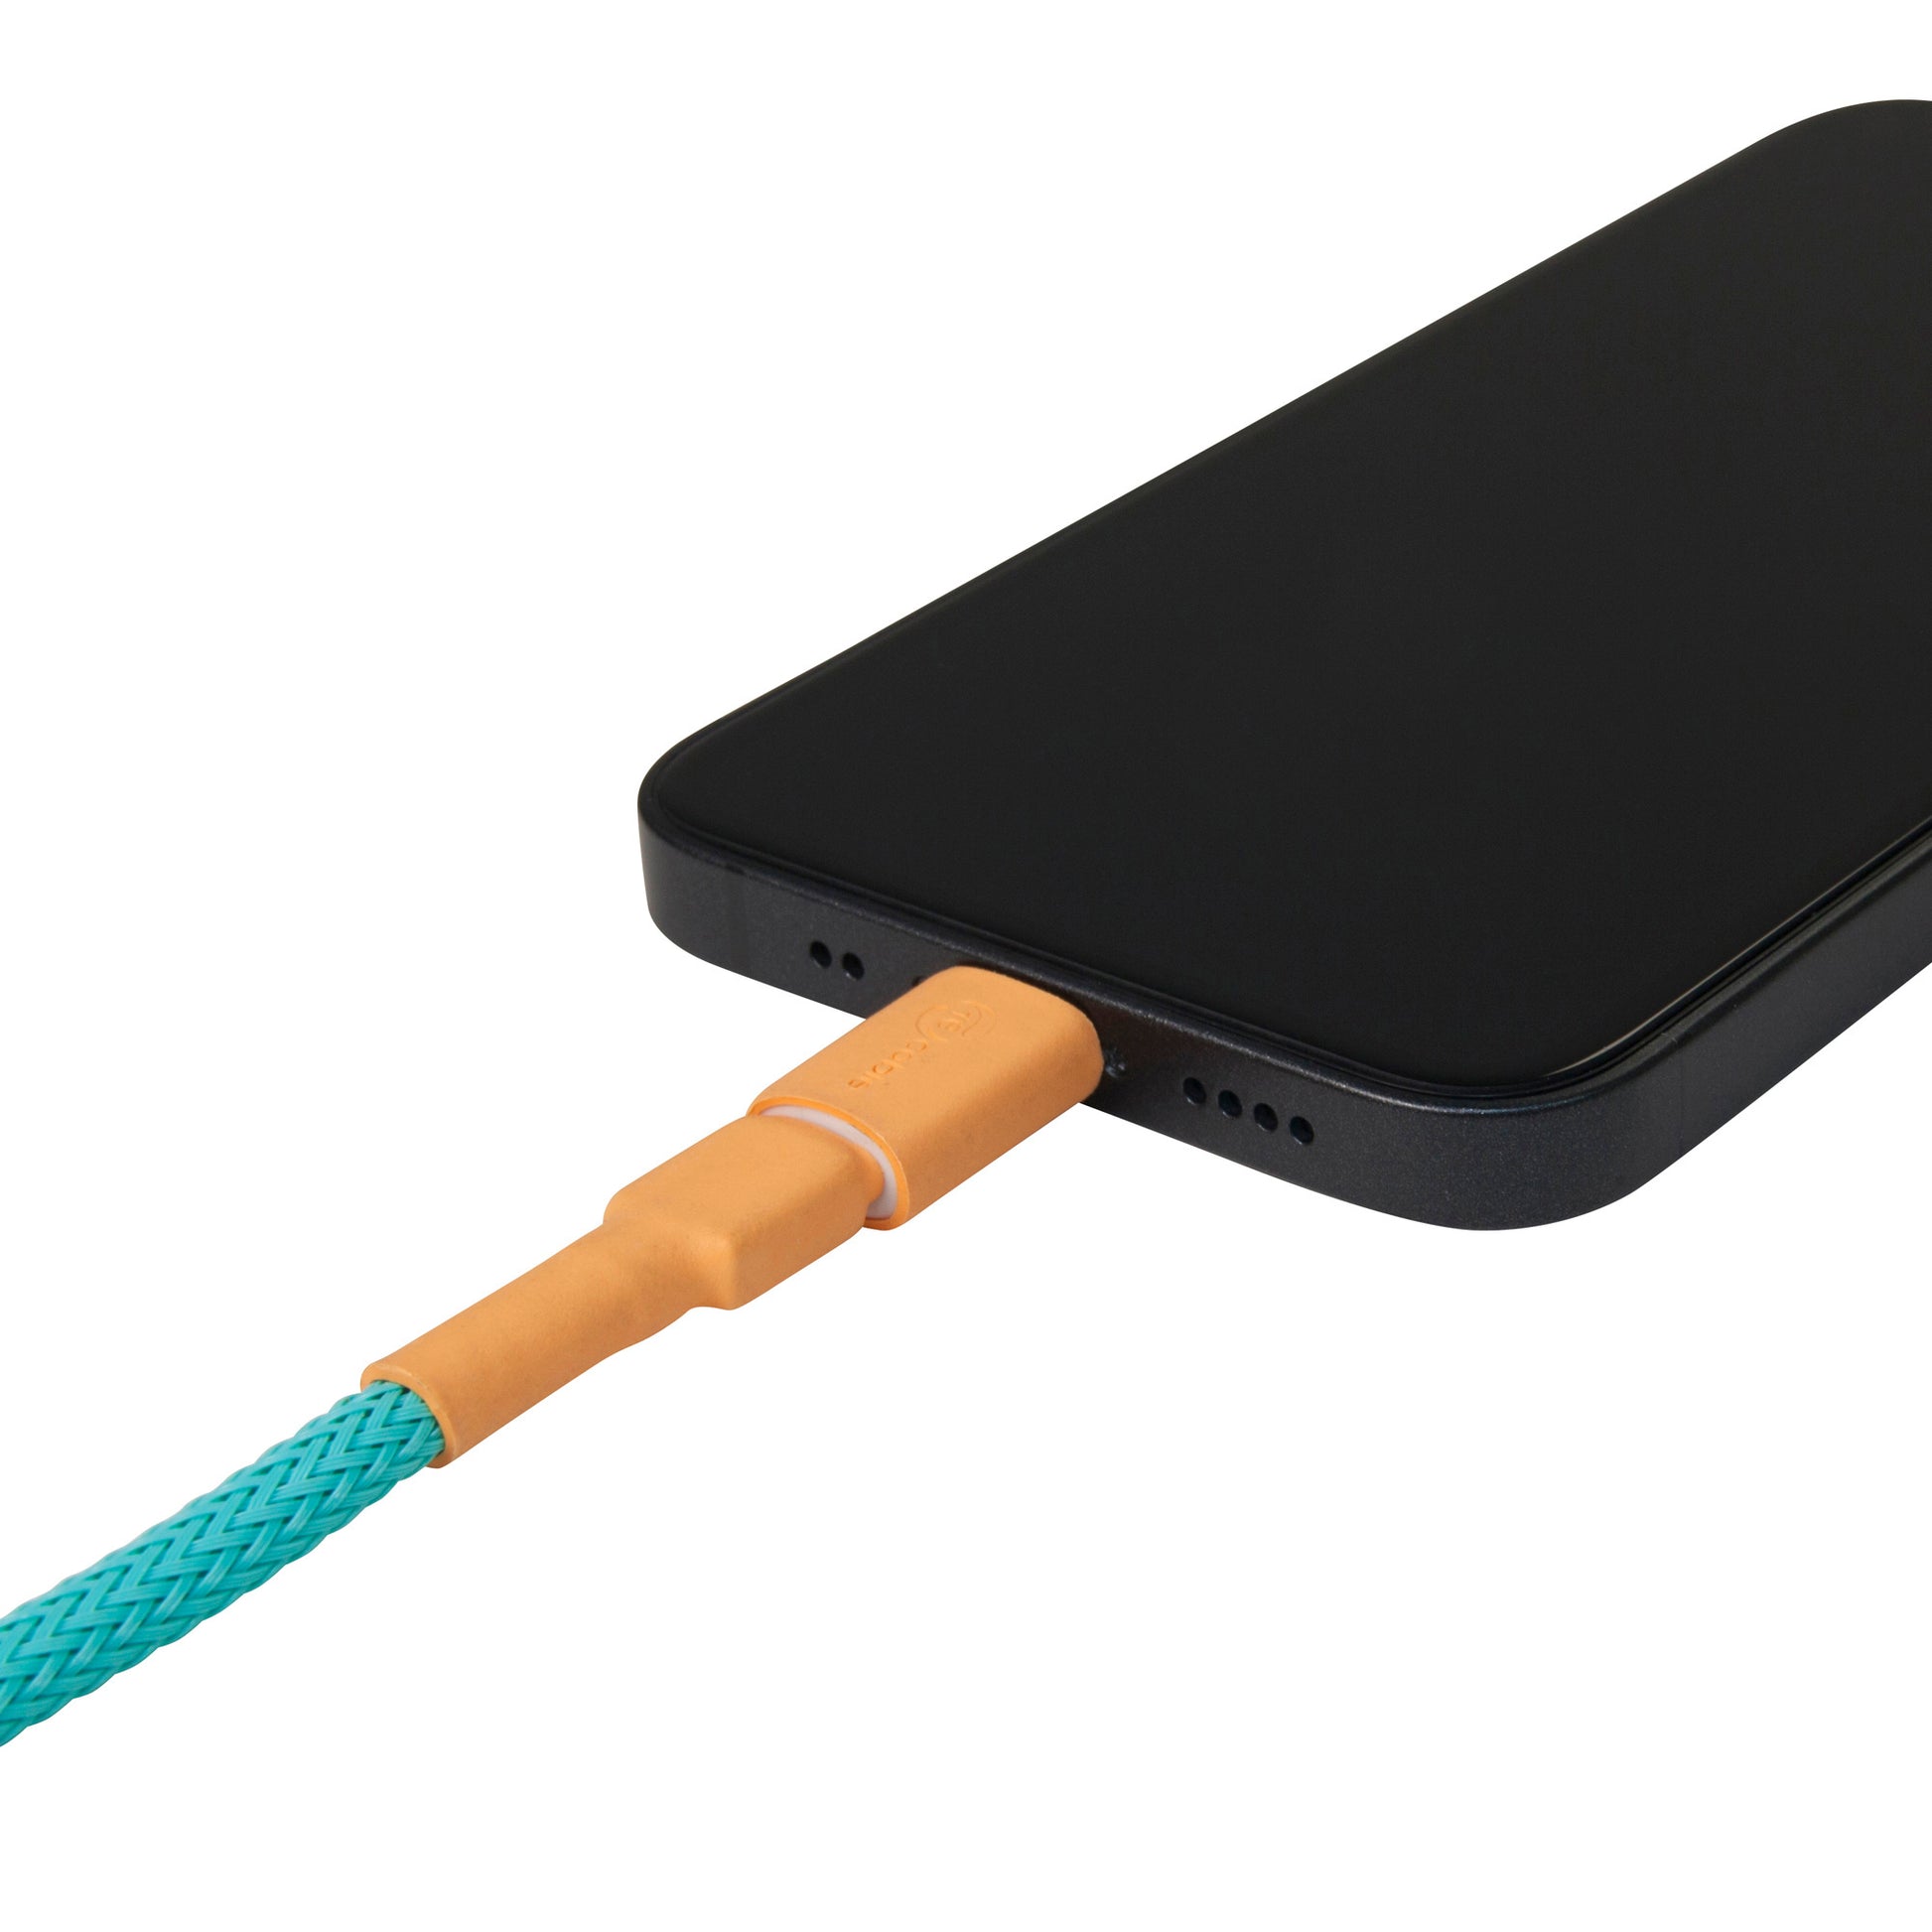 iPhone-Adapter aufgesteckt auf ein Micro USB-Kabel lädt iPhone